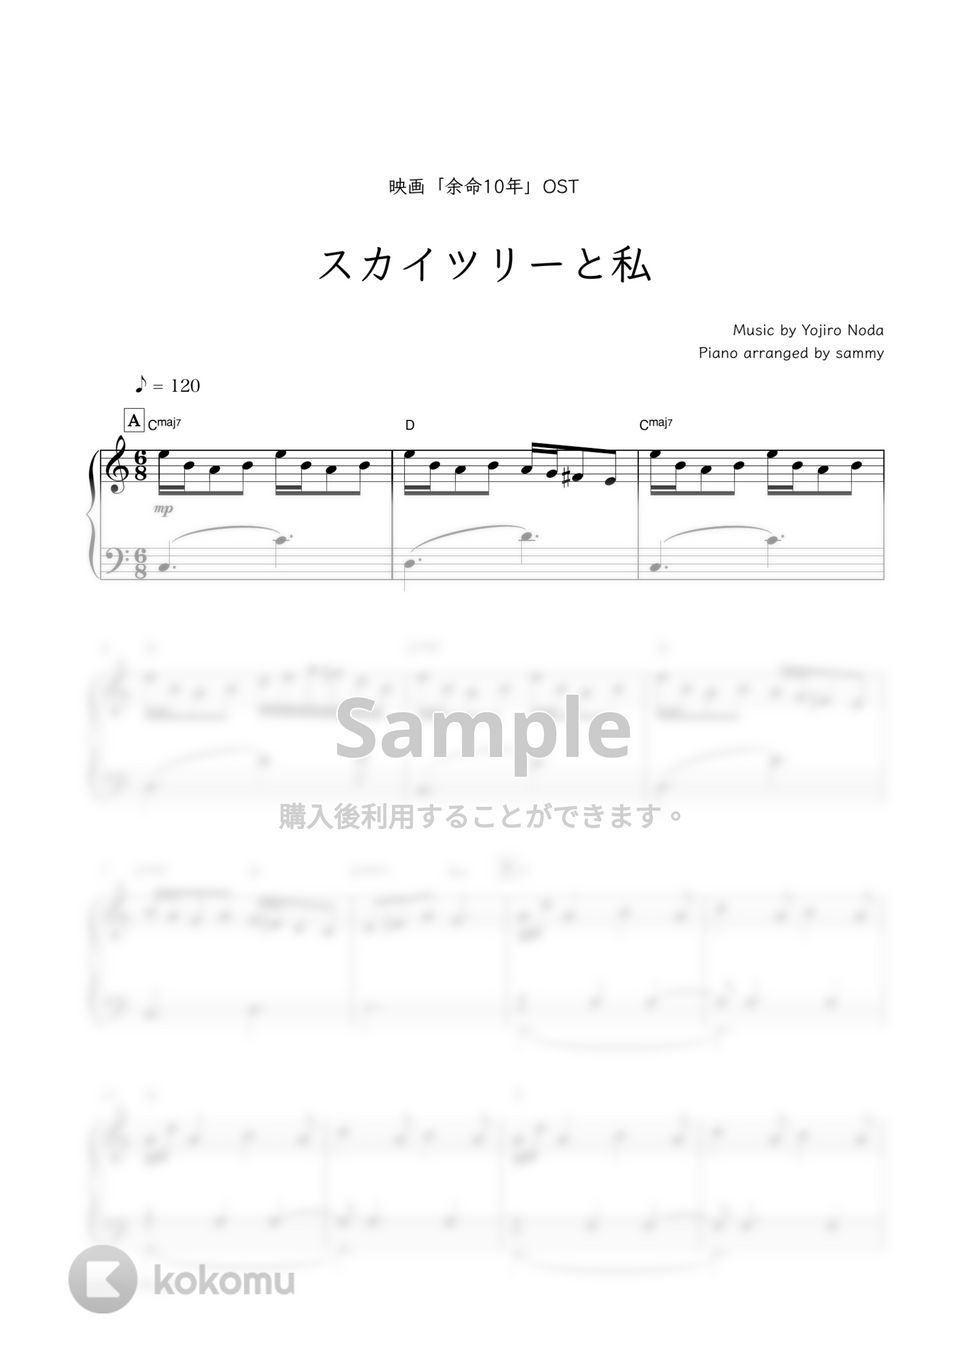 映画「余命10年」OST／RADWIMPS - スカイツリーと私 by sammy